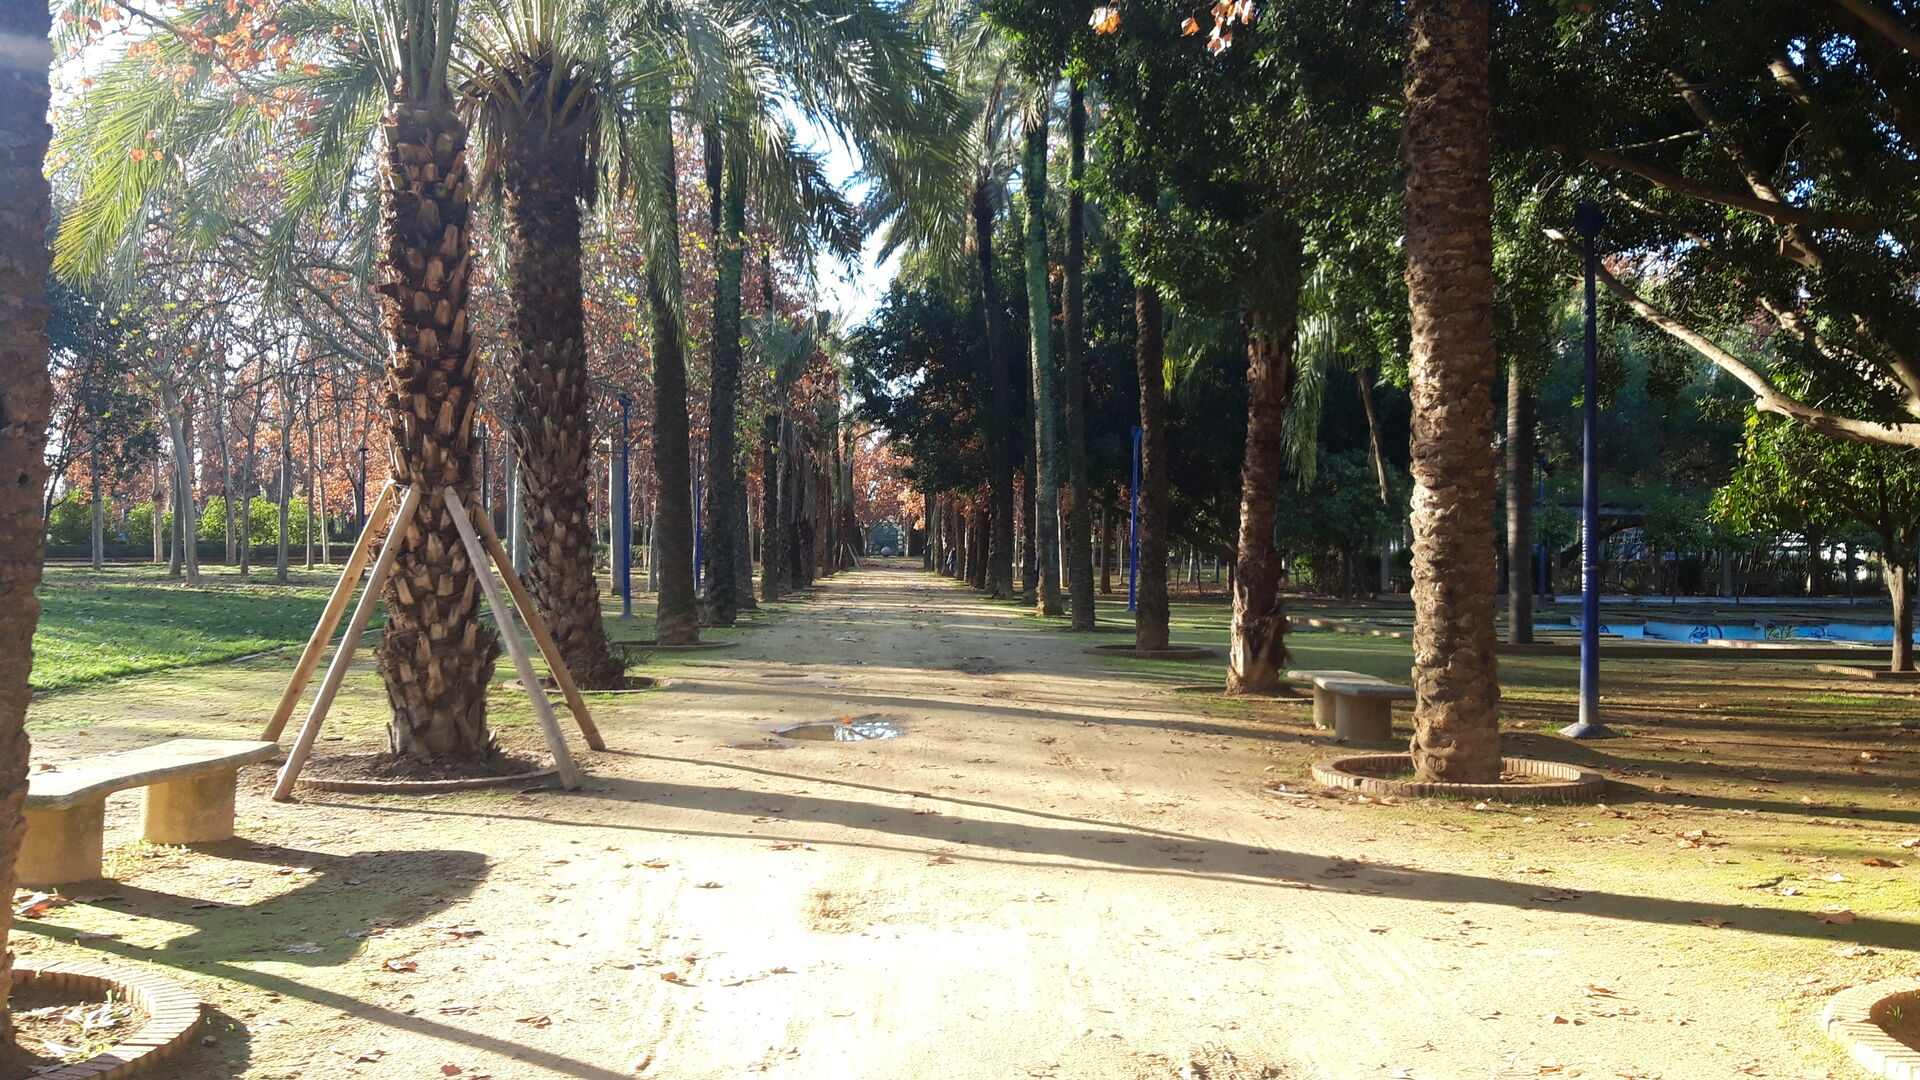 Al pasar el puente giramos a la izquierda y entramos en Los Jardines del Guadalquivir. Merece la pena disfrutar de este parque, tiene hasta un laberinto de setos.